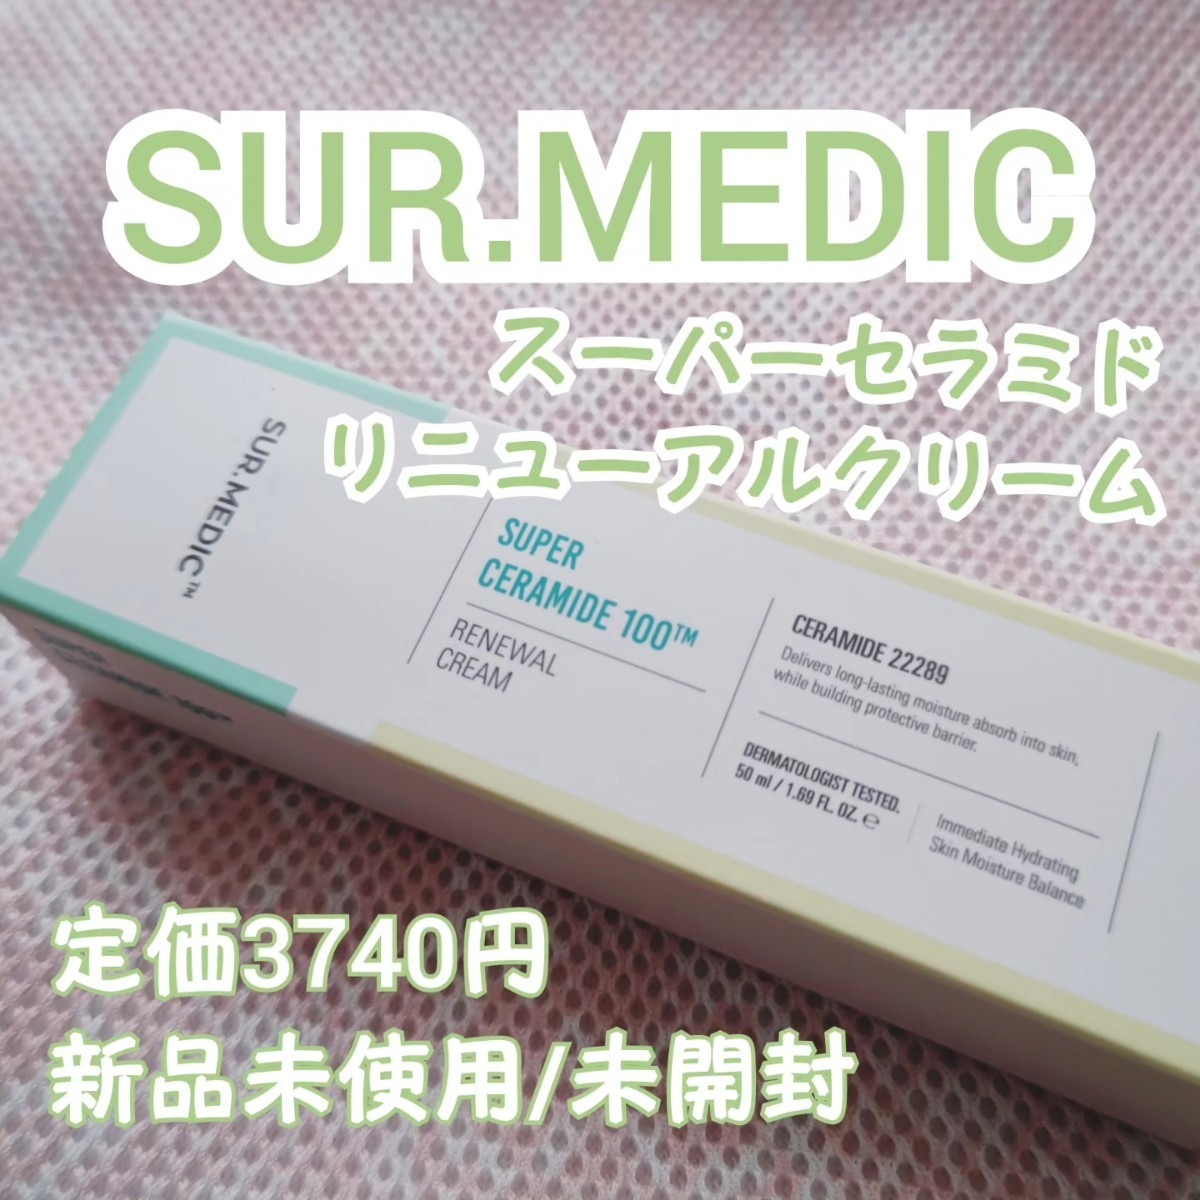 【SUR.MEDIC】サーメディック スーパーセラミドリニューアルクリーム 定価3740円_画像1